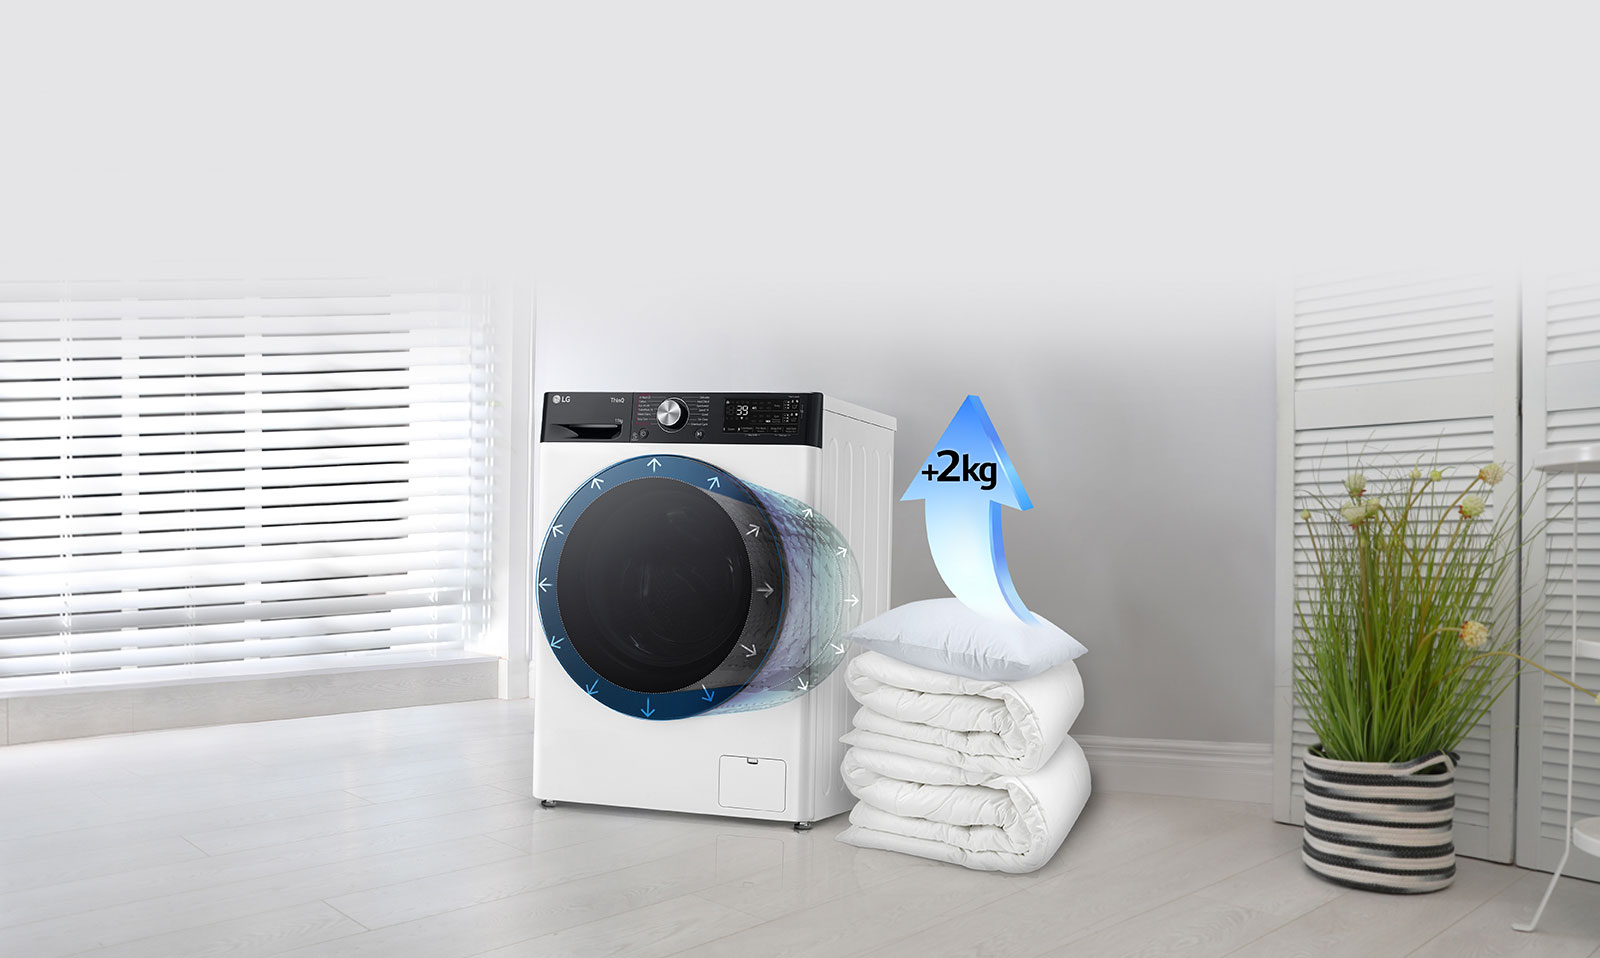 Păturile și pernele sunt lângă mașina de spălat, iar acolo se află o săgeată care indică o creștere de 2 kg pentru pernă.